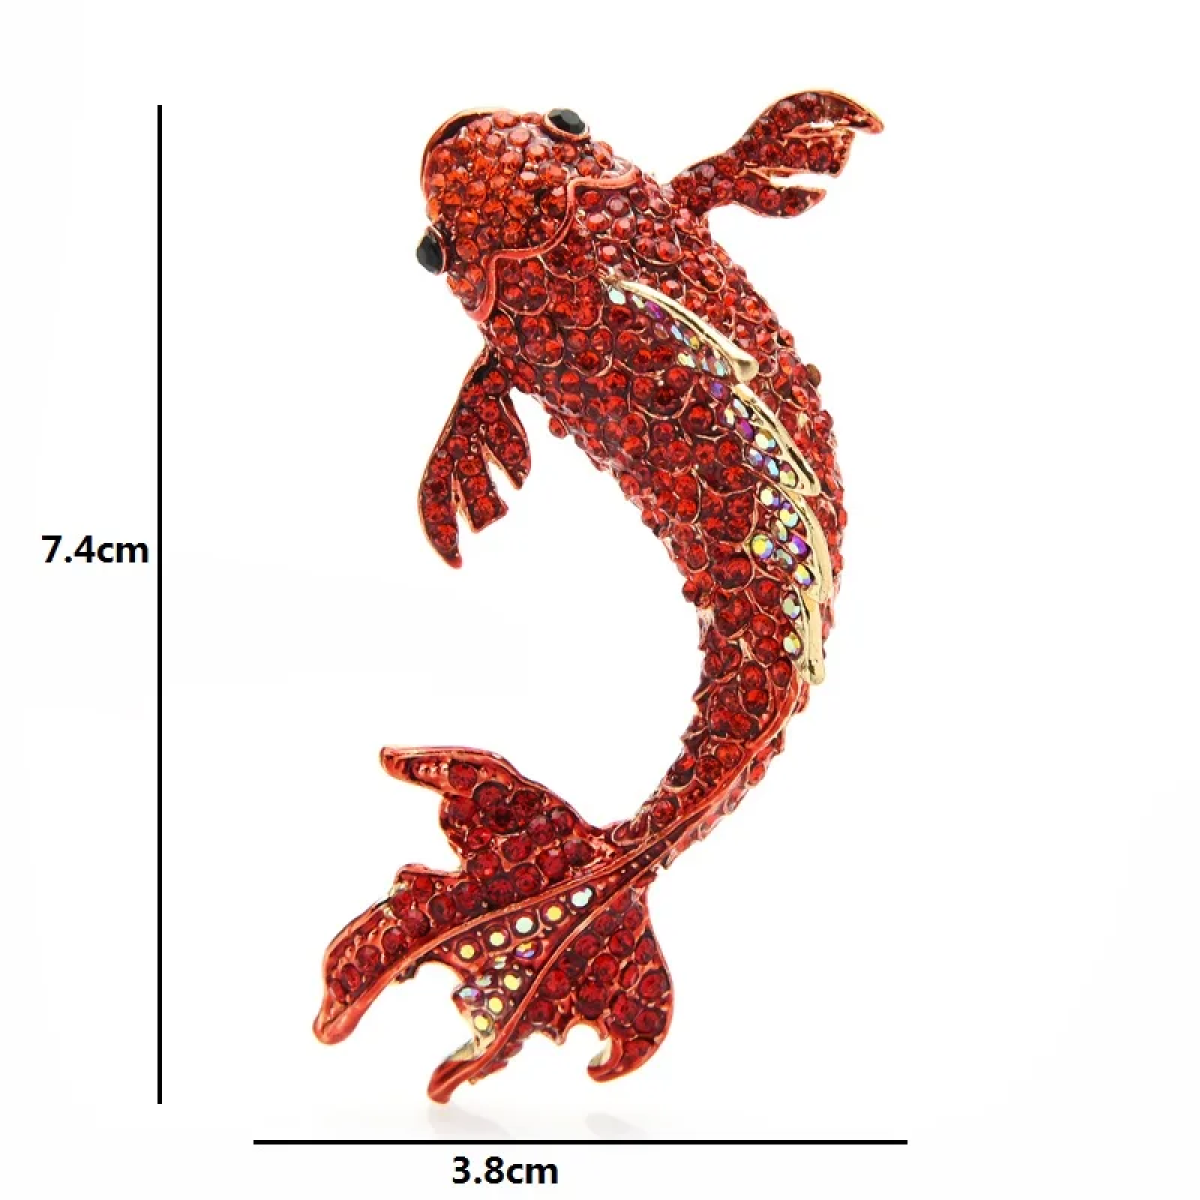 Dimensions: Red Koi Fish Lapel Pin